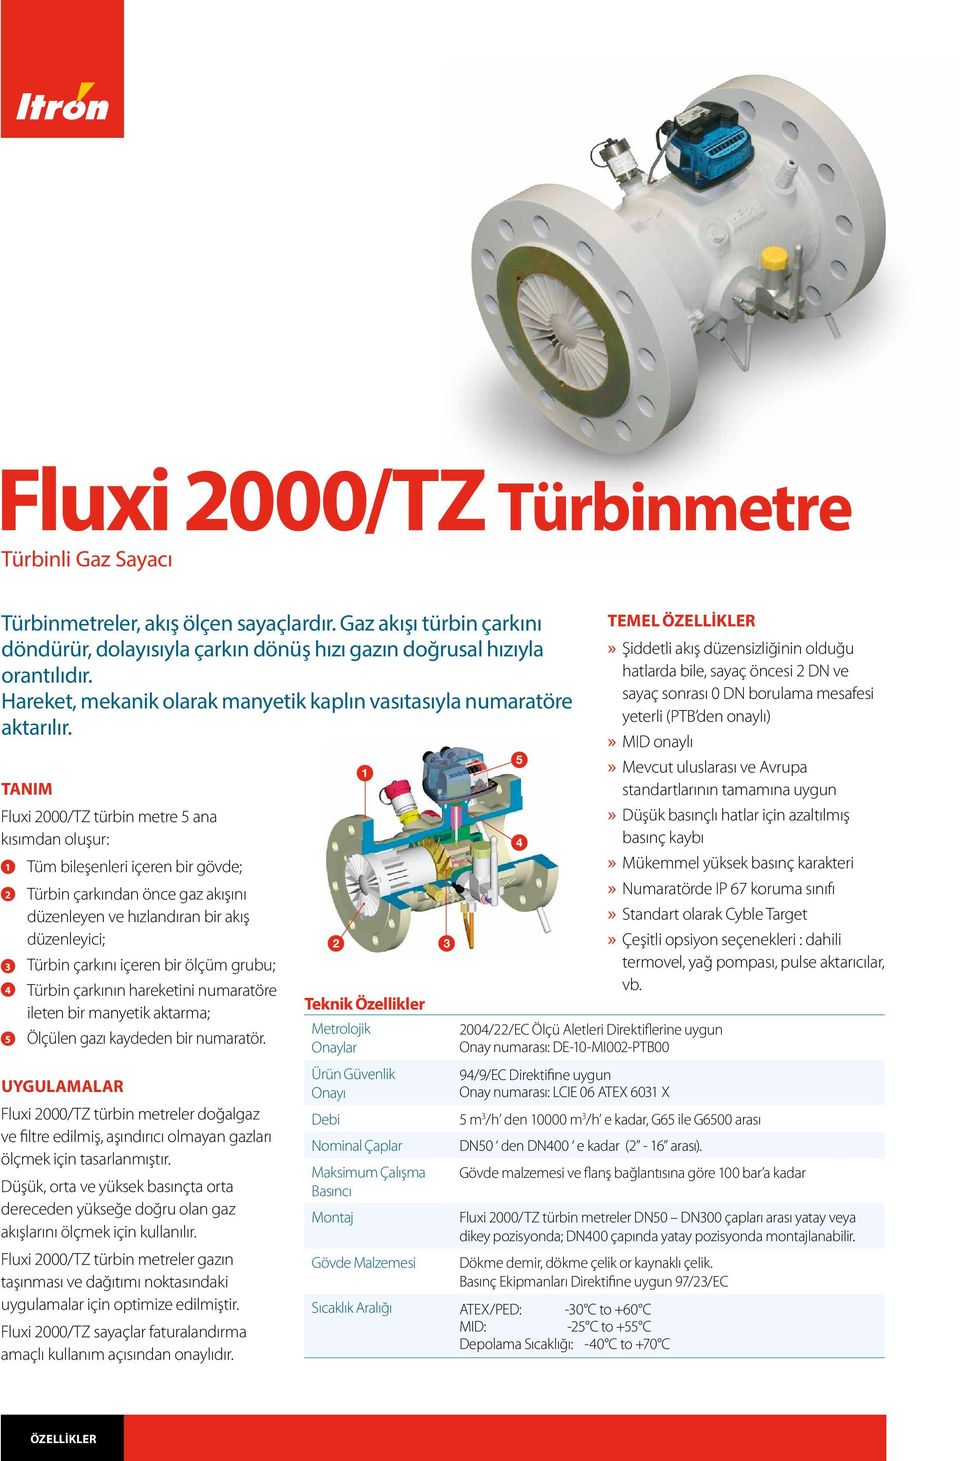 TANIM Fluxi 2000/TZ türbin metre ana kısımdan oluşur: 2 3 4 Tüm bileşenleri içeren bir gövde; Türbin çarkından önce gaz akışını düzenleyen ve hızlandıran bir akış düzenleyici; Türbin çarkını içeren